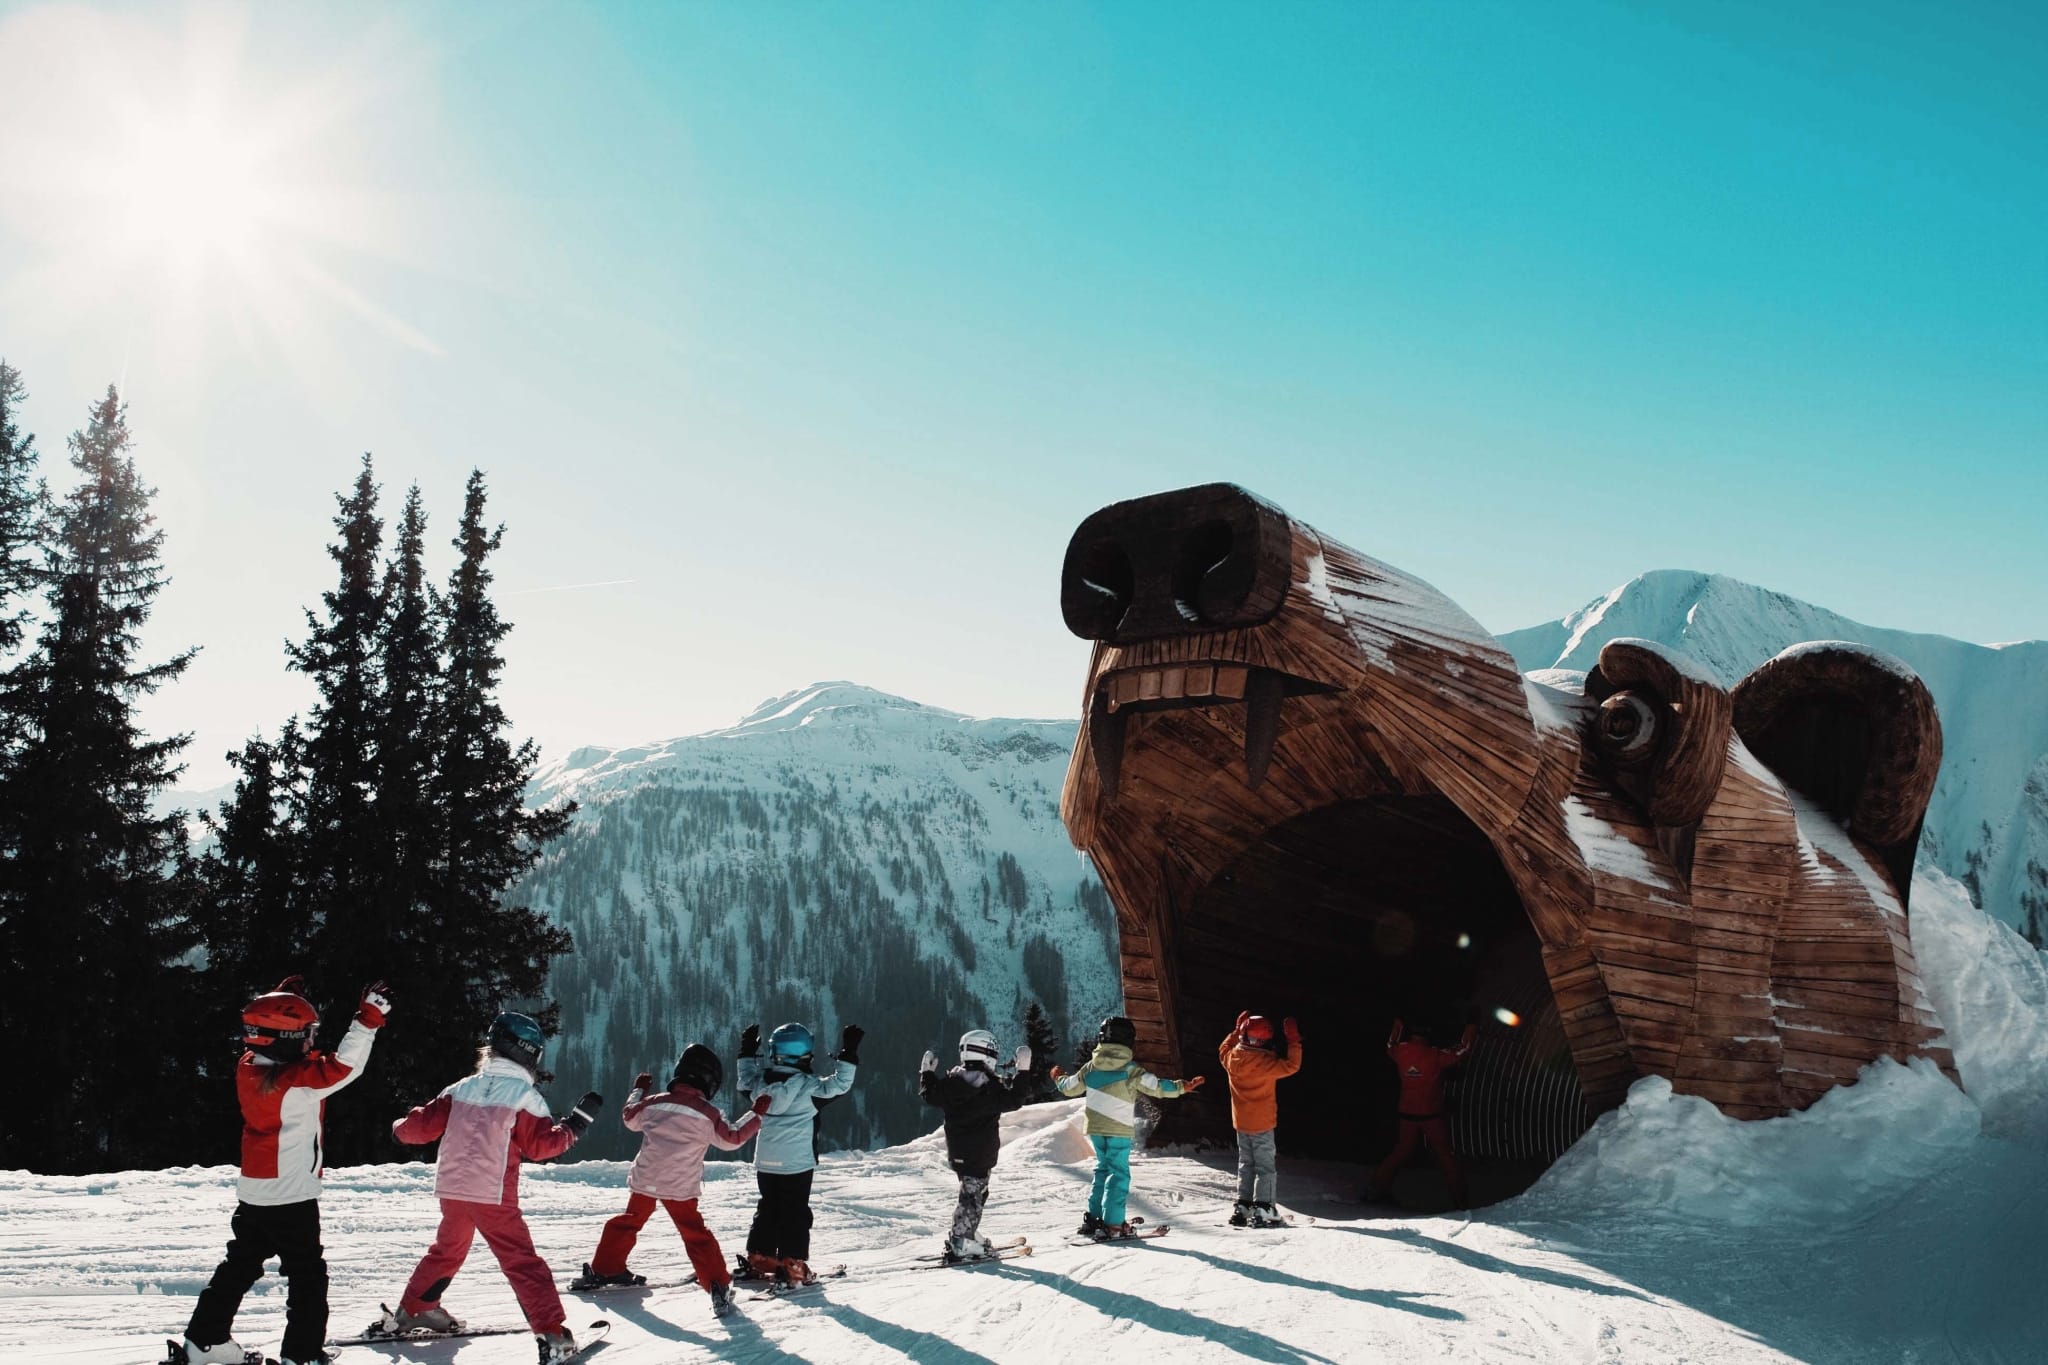 7 Kinder fahren mit den Ski in einen Holzbären hinein